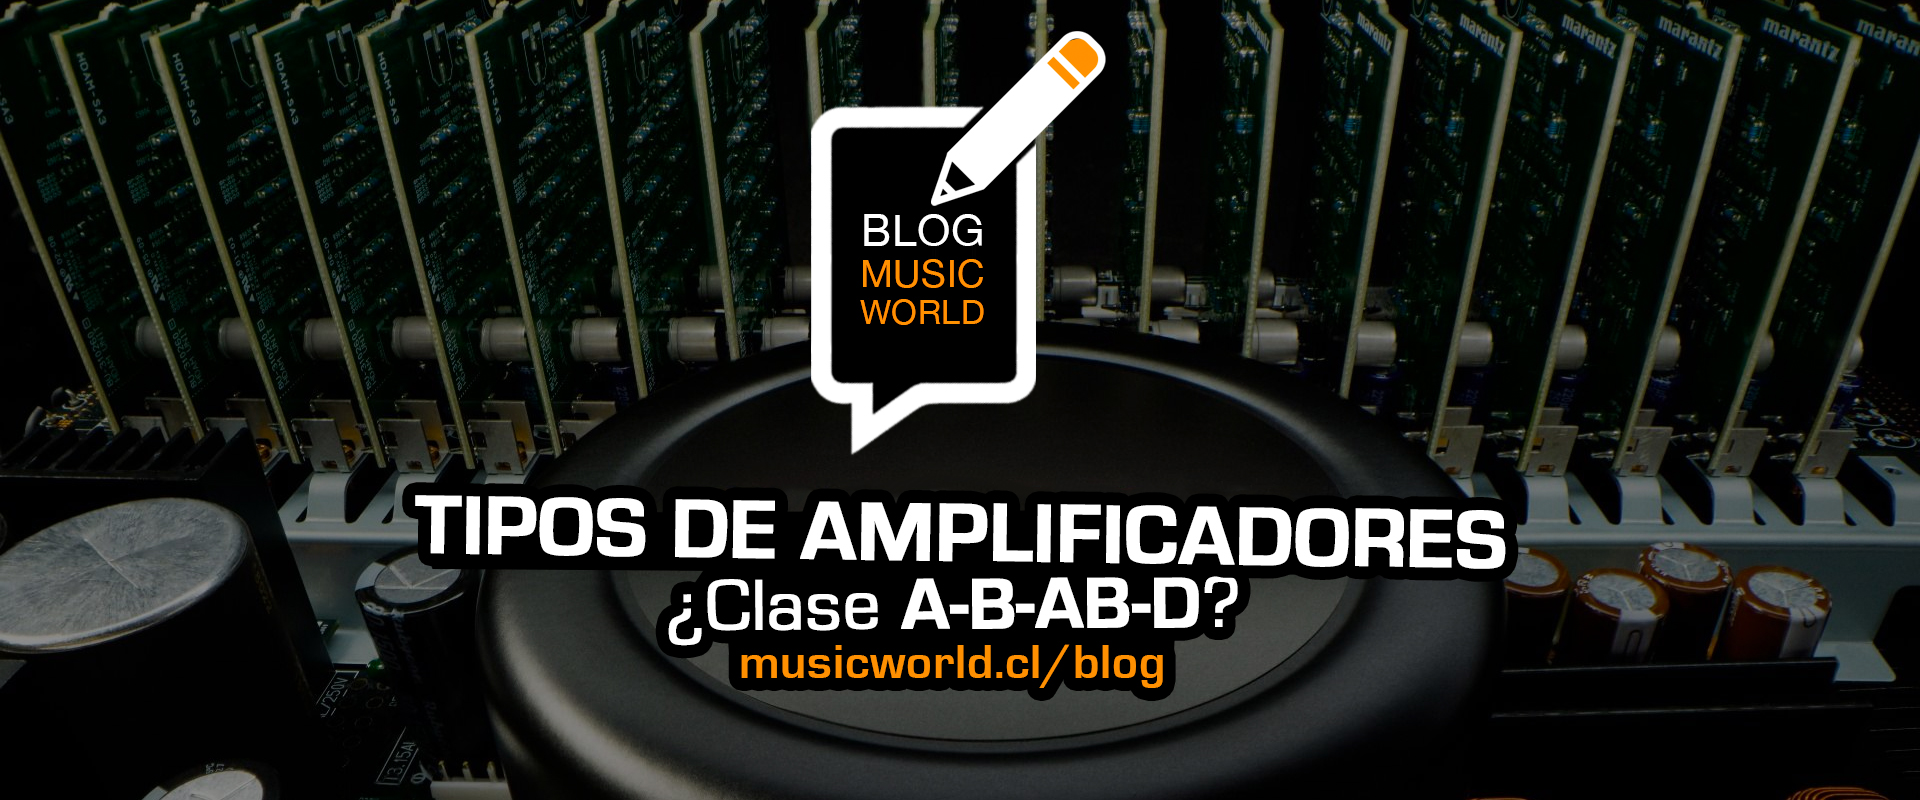 Clase de amplificadores A-B-AB-D